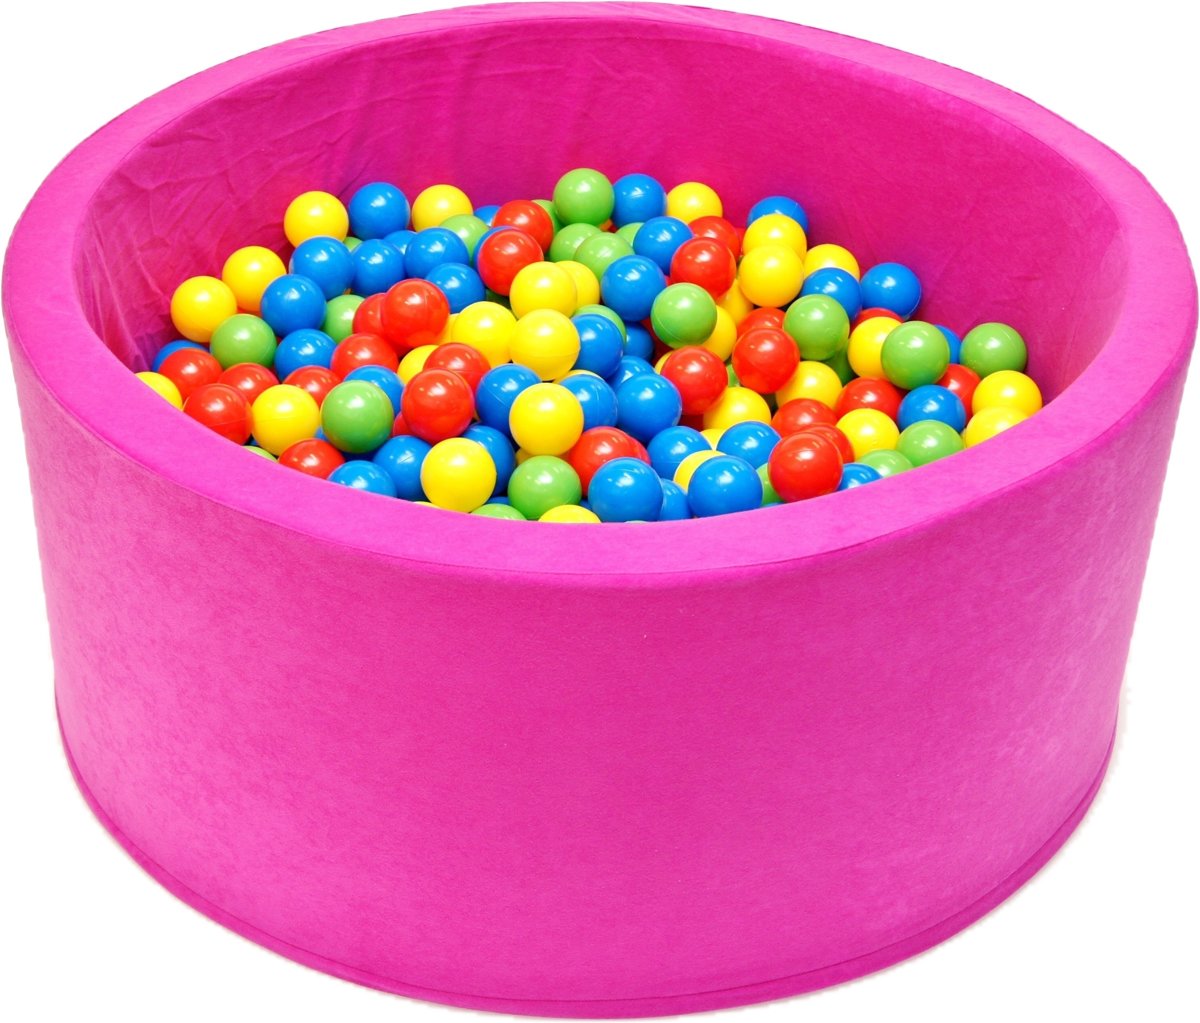 Ballenbak | Roze incl.  200 gele, groene, blauwe en rode ballen